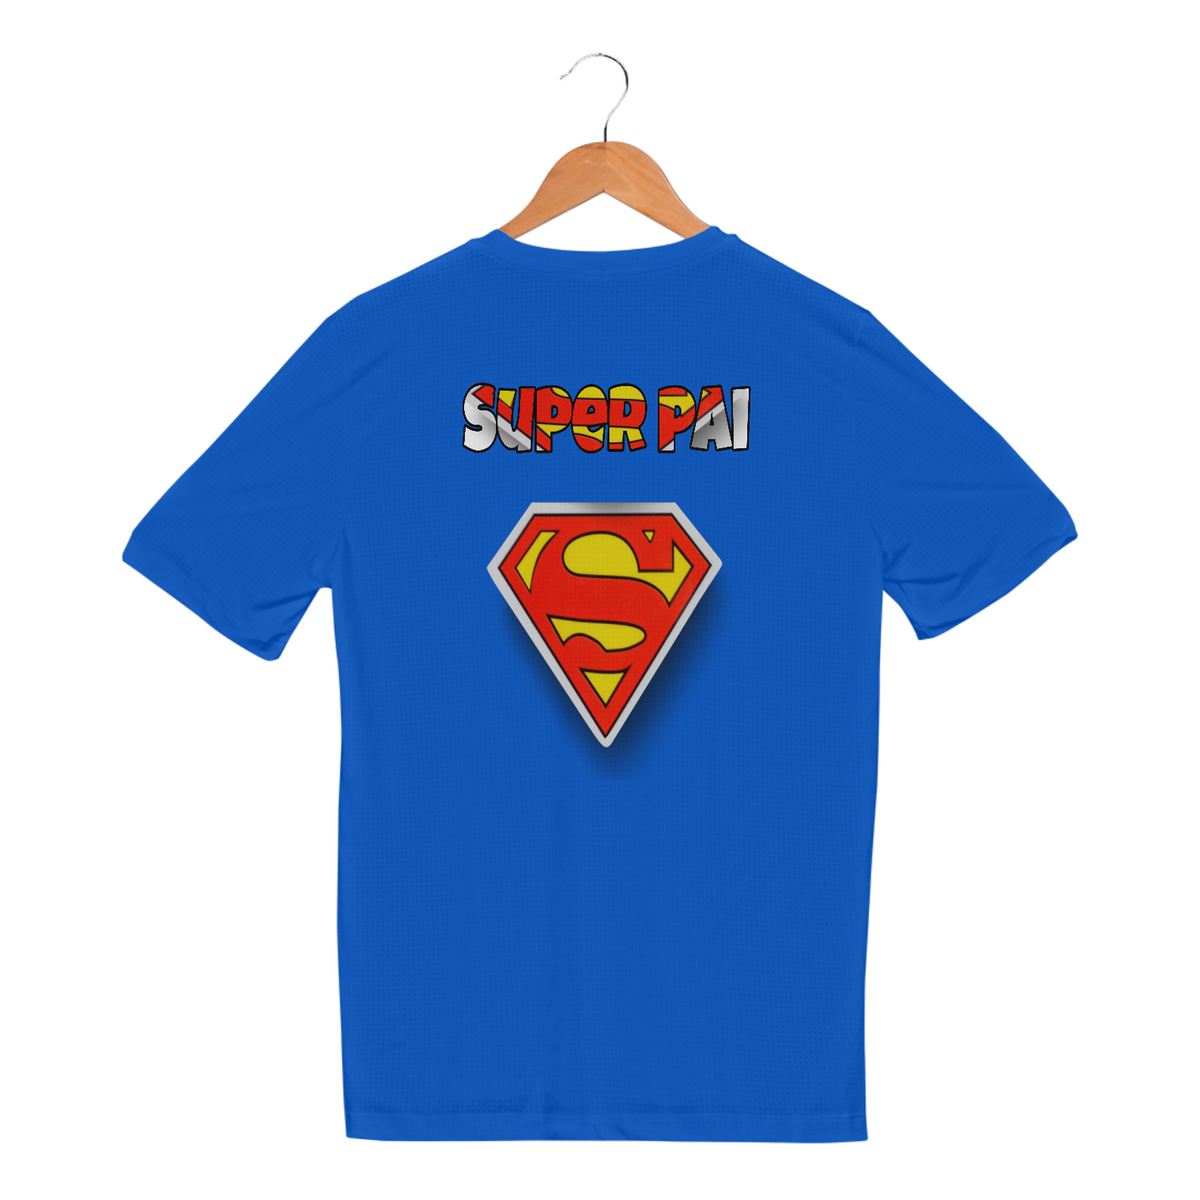 Nome do produto: Camiseta Super pai